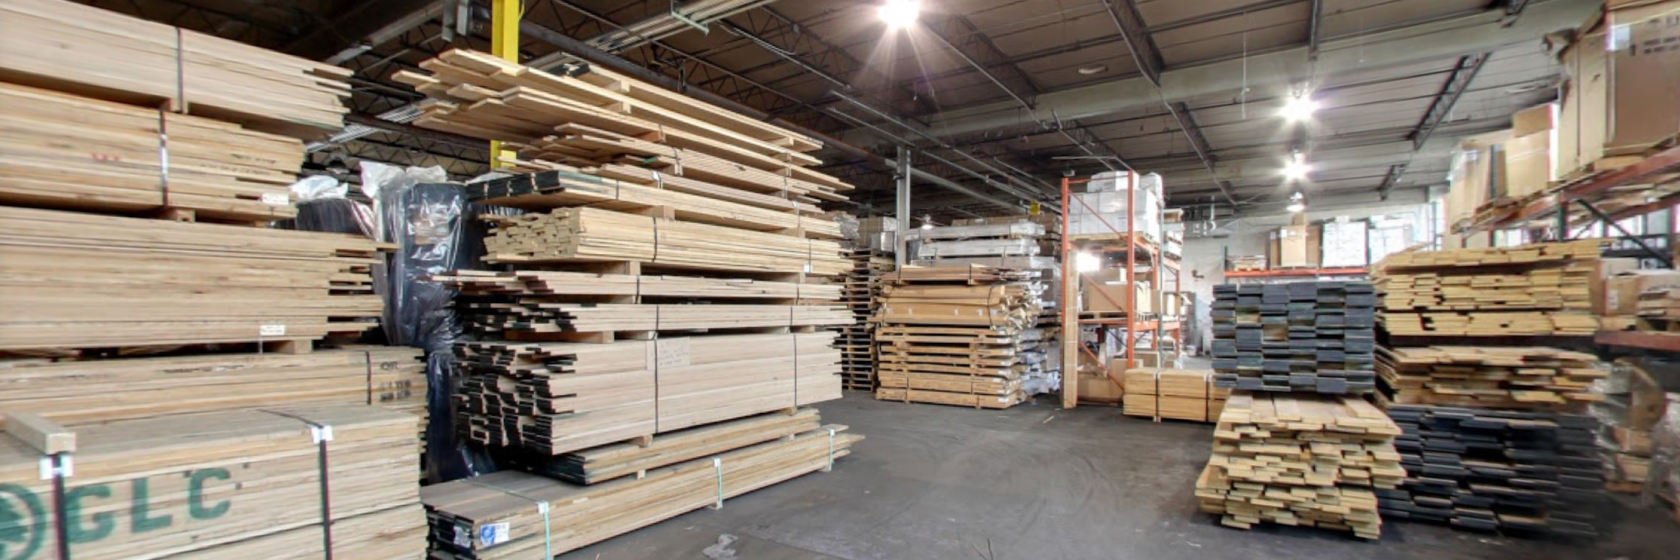 Wood Flooring Long Island, Hardwood Floor Warehouse